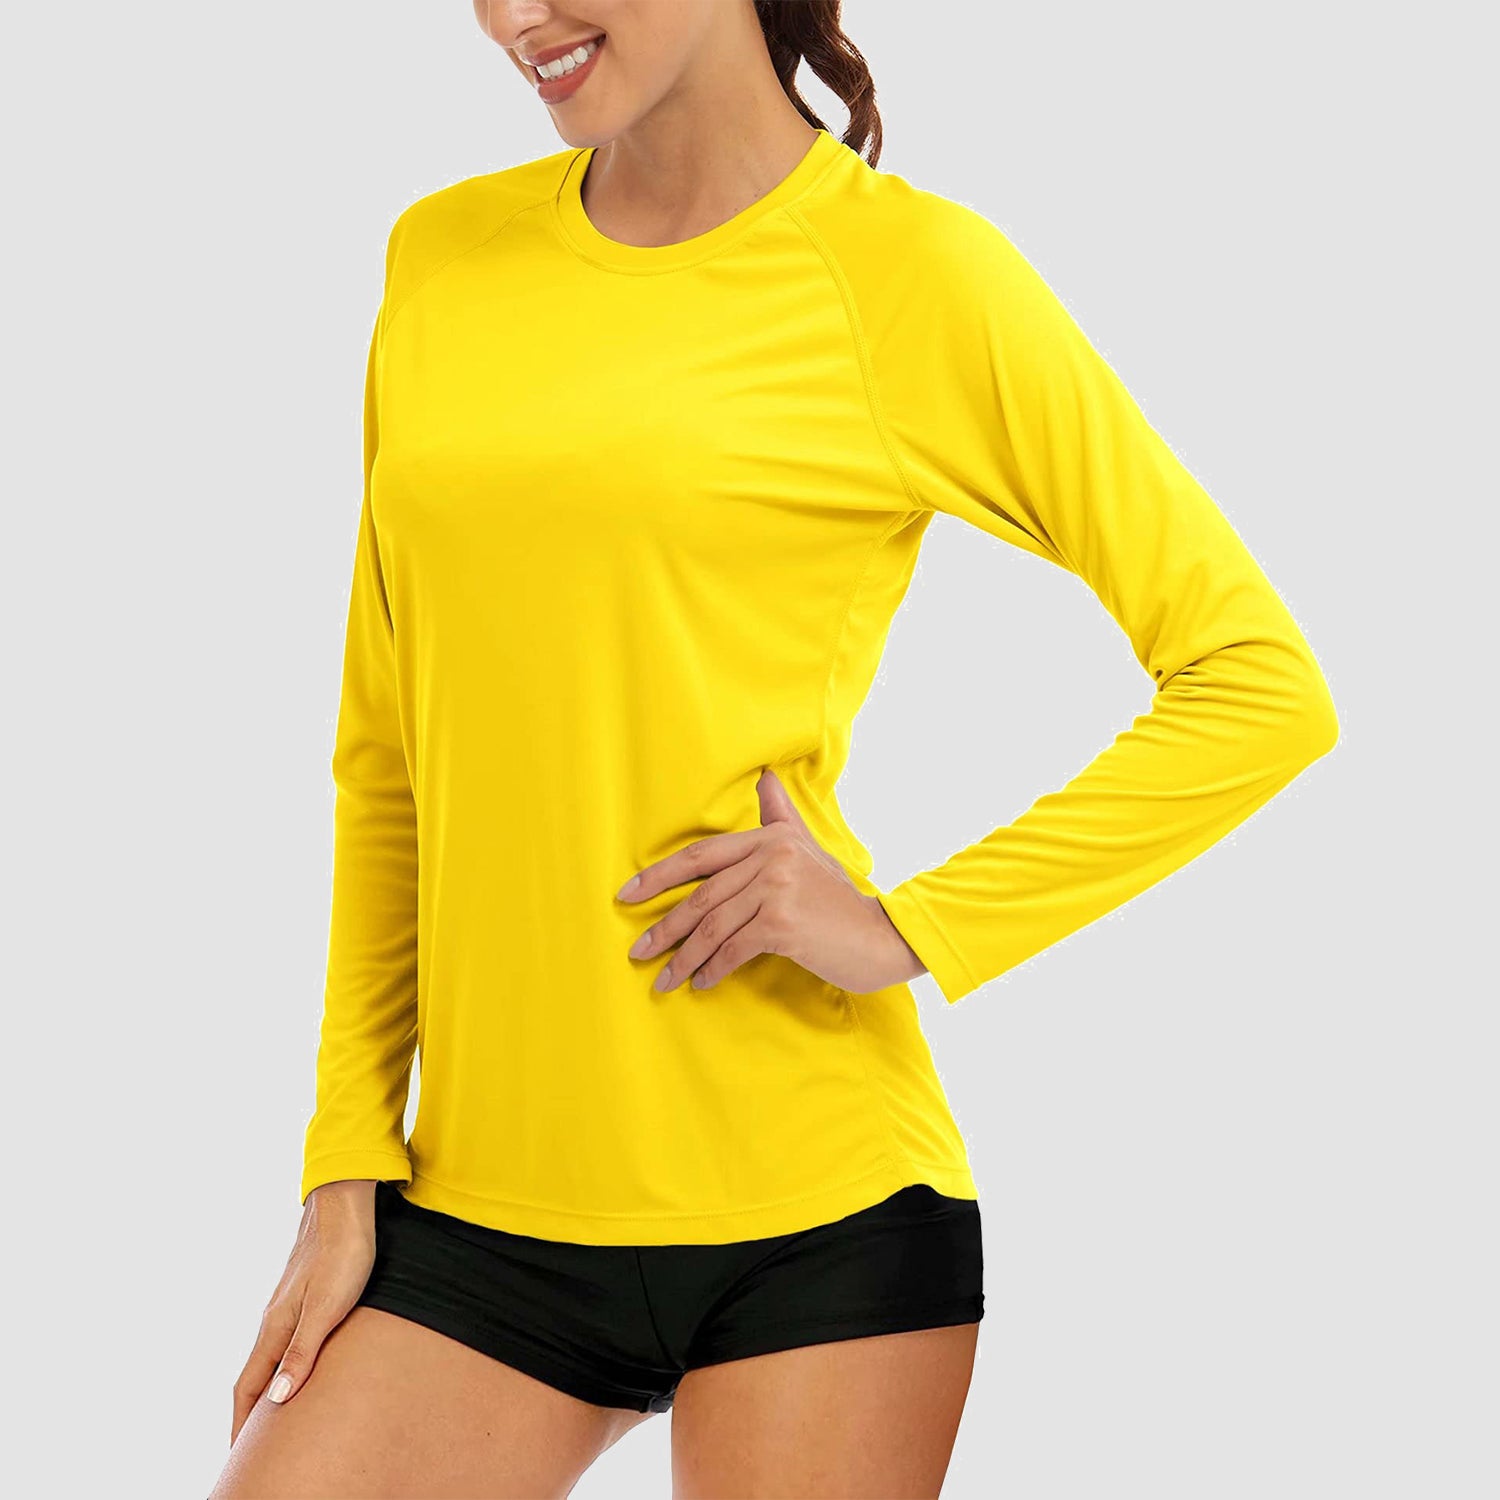 Women's Long Sleeve Shirts UPF 50+ Sun Protection Shirts for Hiking Fishing Workout Rash Guard, Dull Cyan / XL